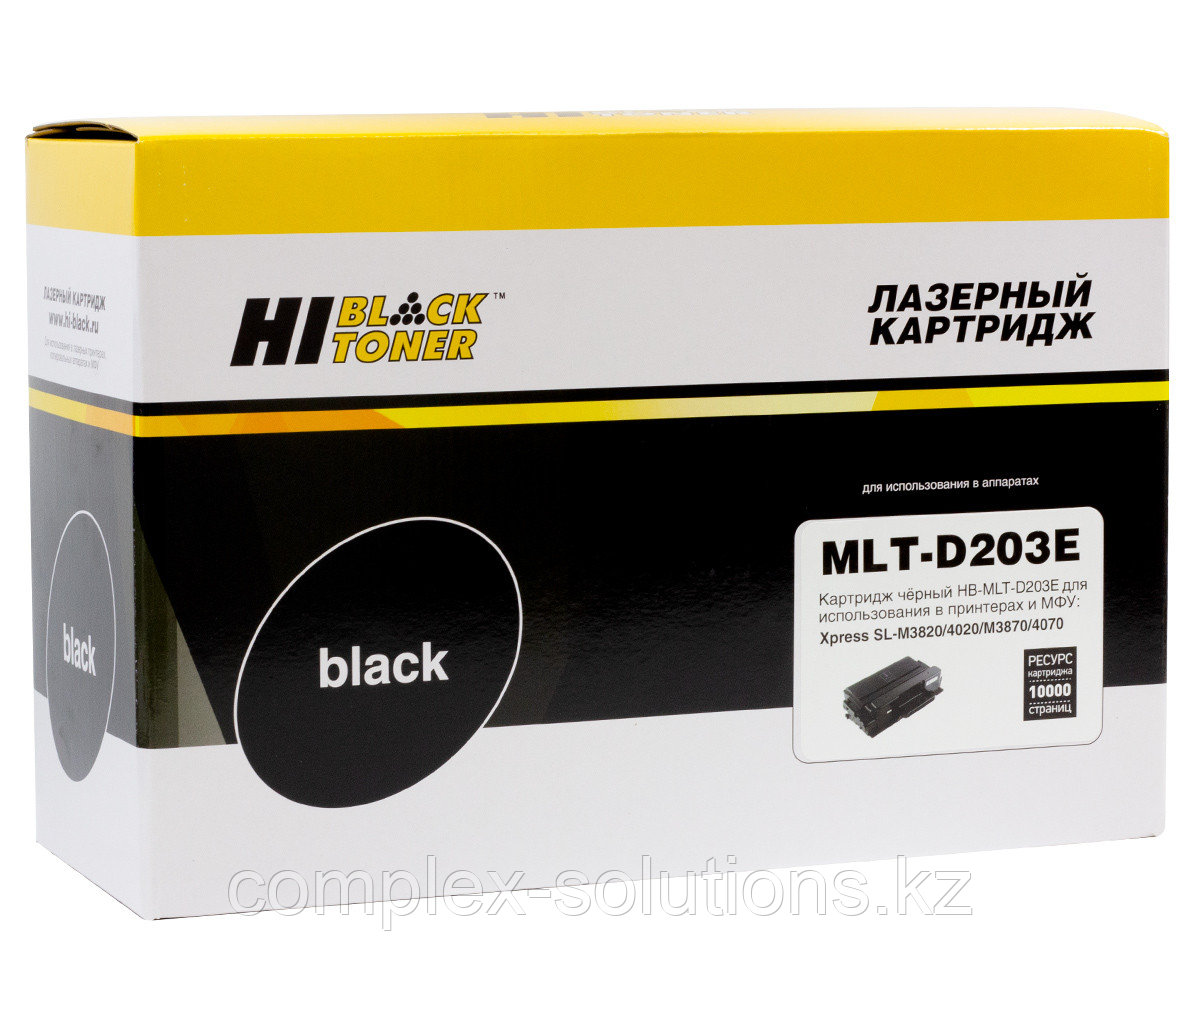 Картридж Hi-Black [MLT-D203E] для Samsung SL-M3820 | 3870 | 4020 | 4070, 10K [новая прошивка] | [качественный